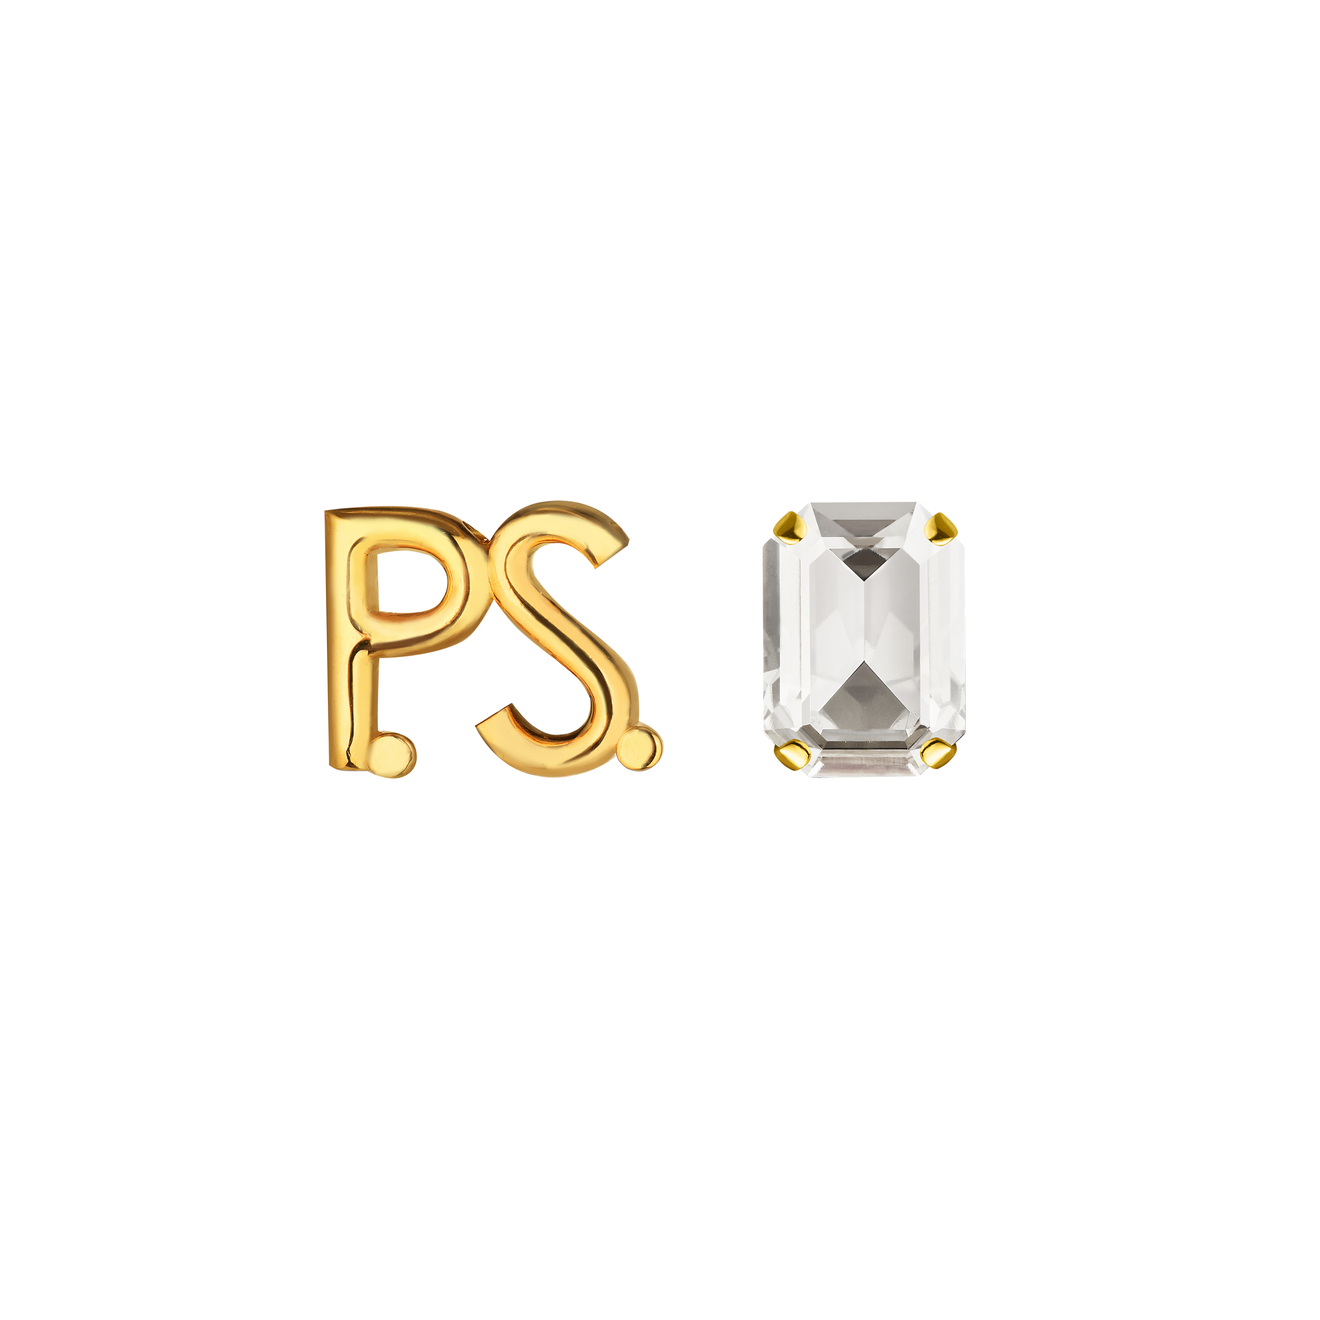 Phenomenal Studio Позолоченные серьги с фирменным логотипом и крупным кристаллом P.S. Crystal Gold phenomenal studio серебристые серьги с кристаллами и металлическими бусинами crystal disco